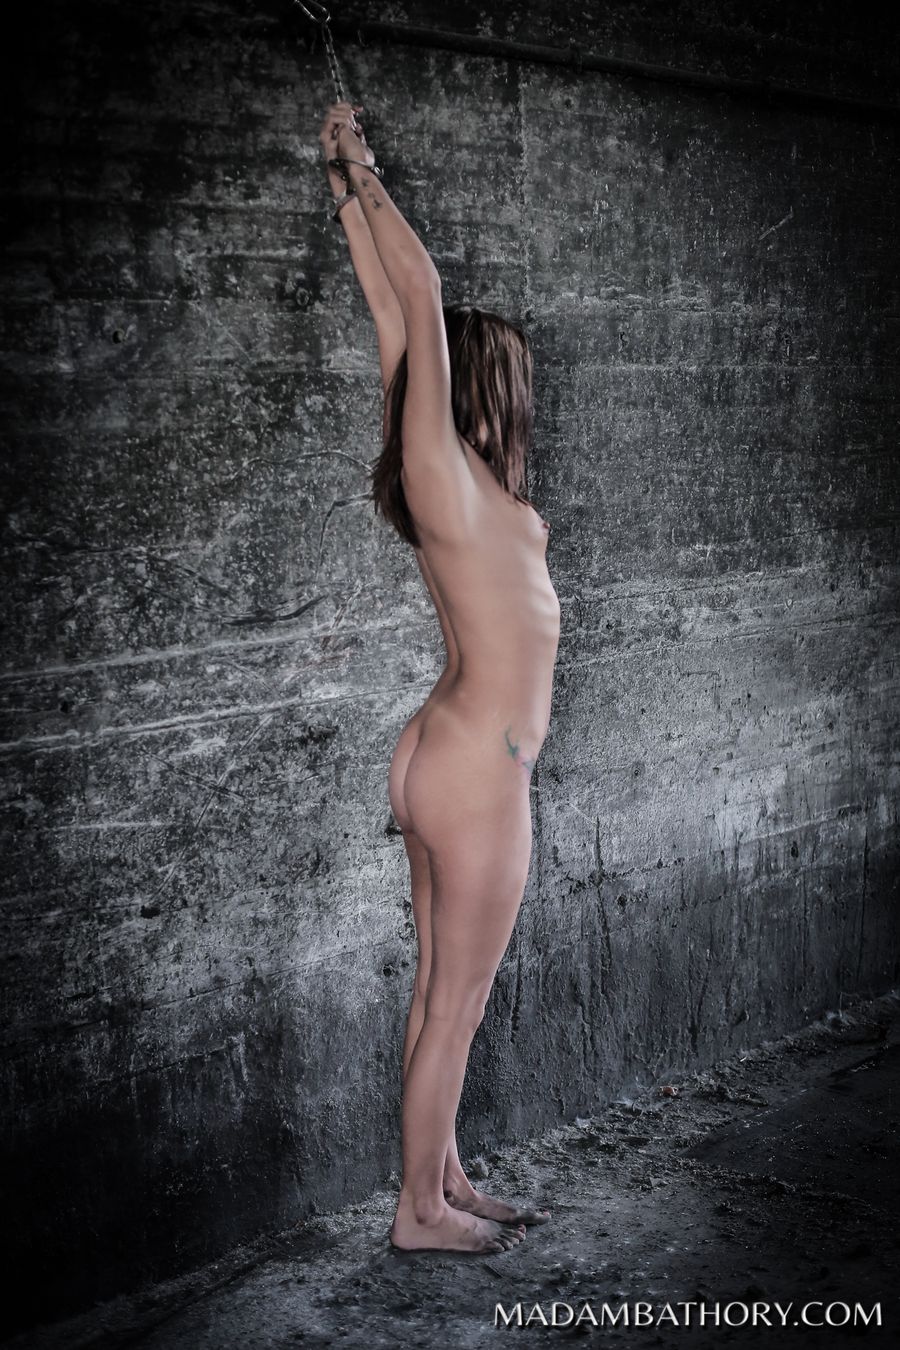 Isabella shackled naked wall